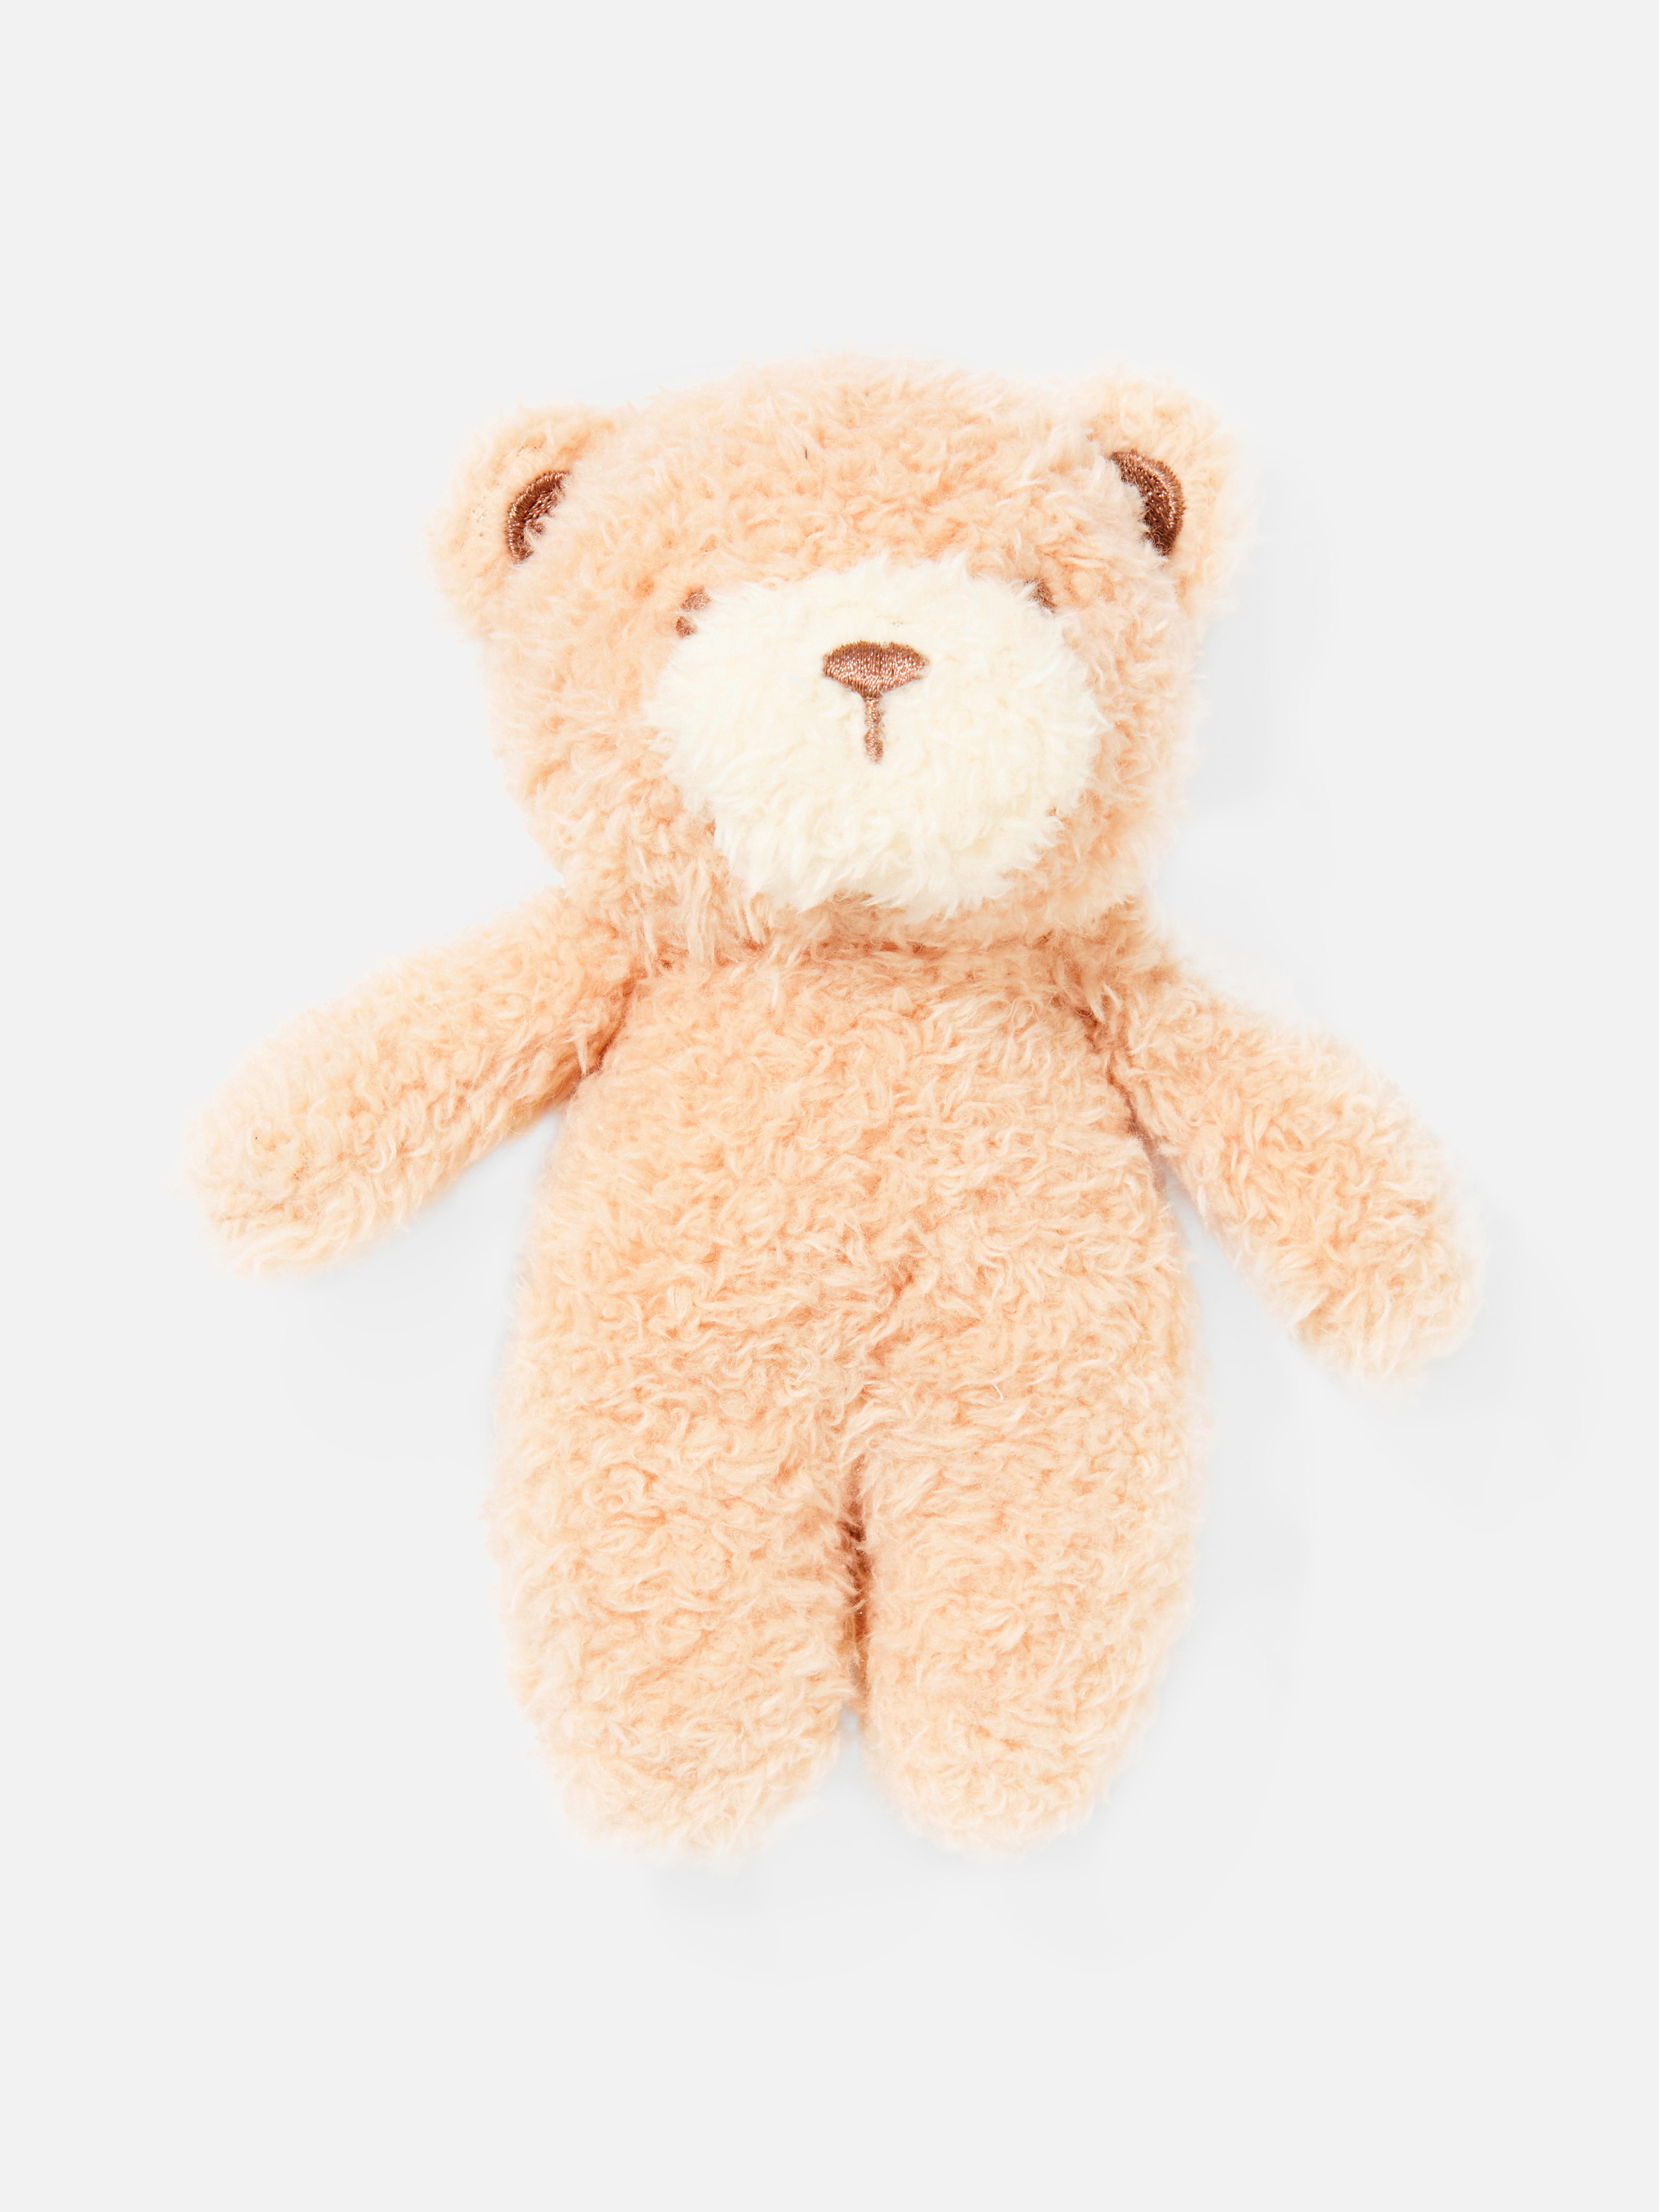 Kleine teddybeer | Kinderspeelgoed -spelletjes | Decoraties voor feestdagen | Woonartikelen | Primark-producten | Primark Nederland